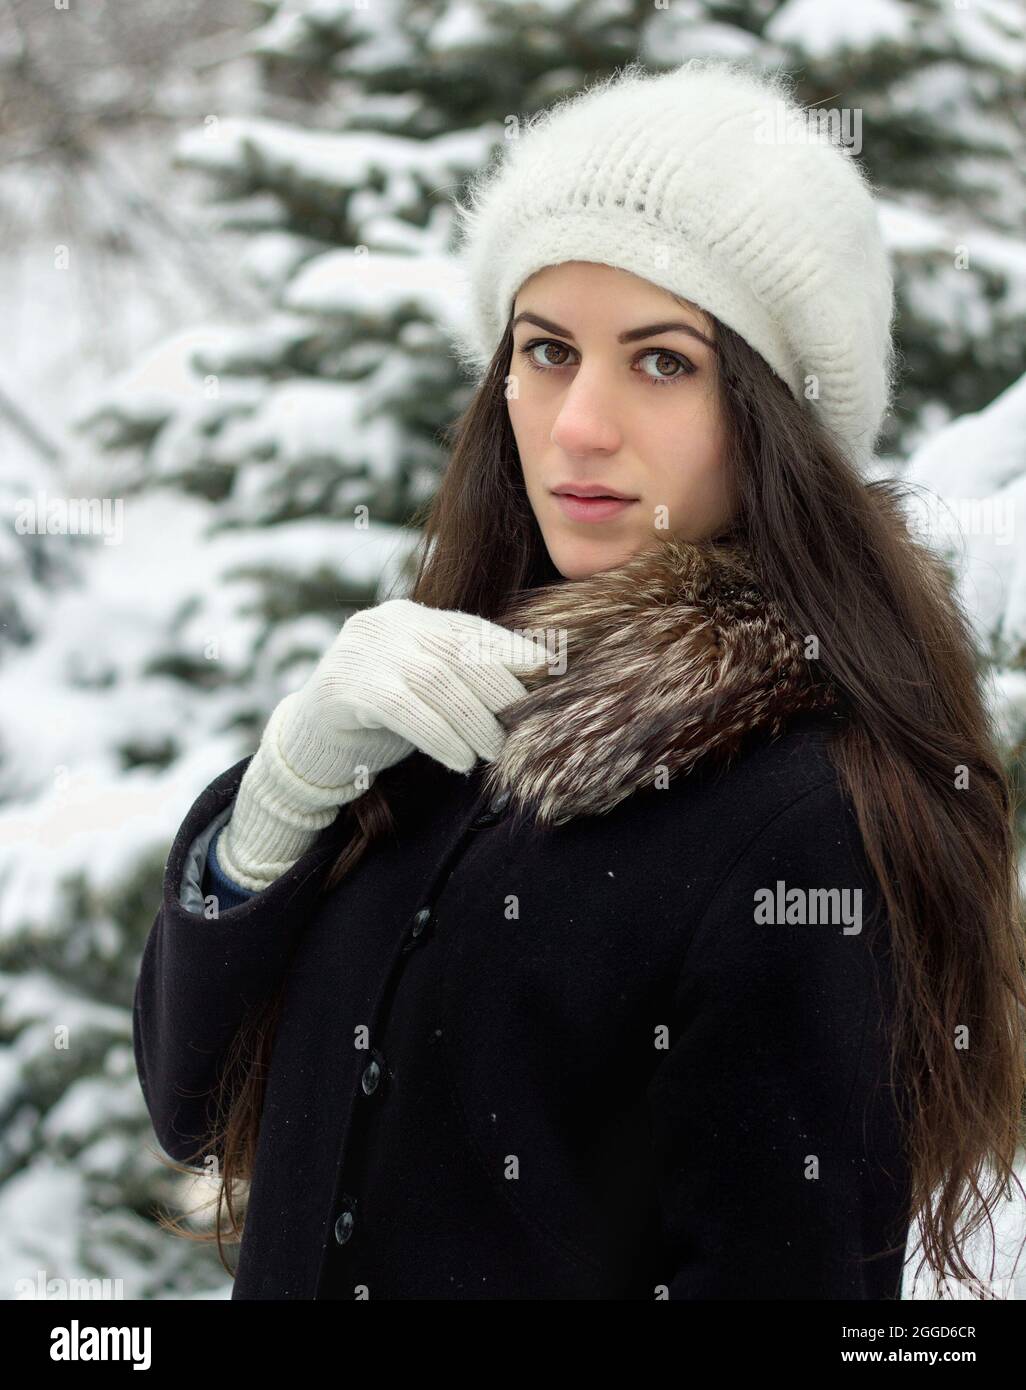 Fröhliche junge Frau, die draußen im Schnee in Strickmütze und weißen Handschuhen steht Stockfoto